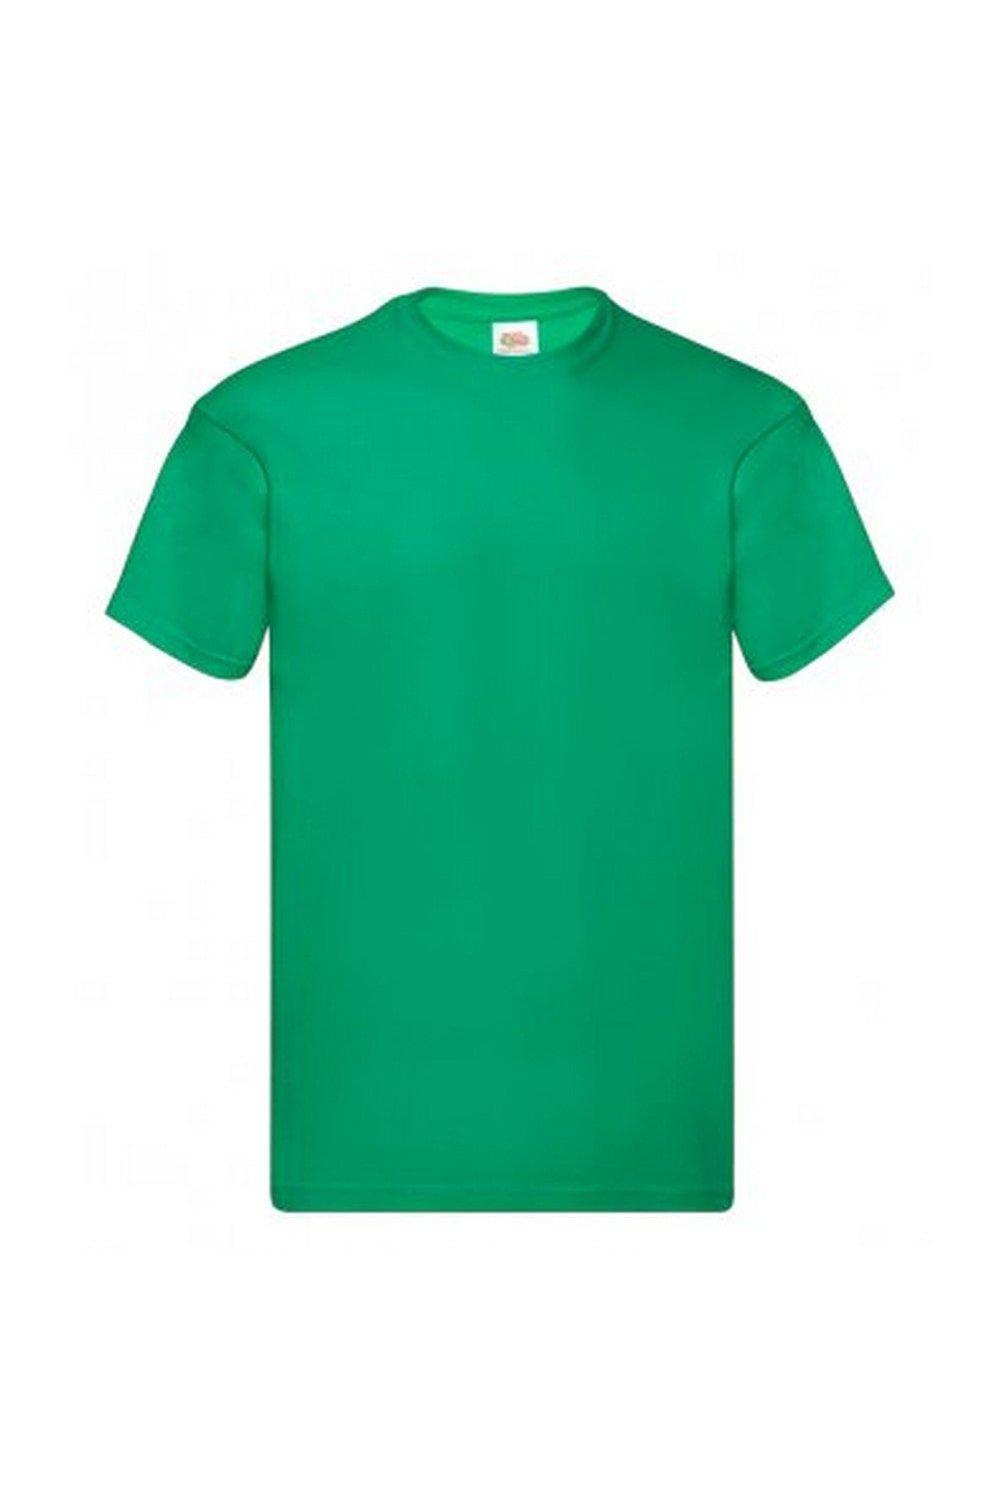 Оригинальная футболка с коротким рукавом Fruit of the Loom, зеленый